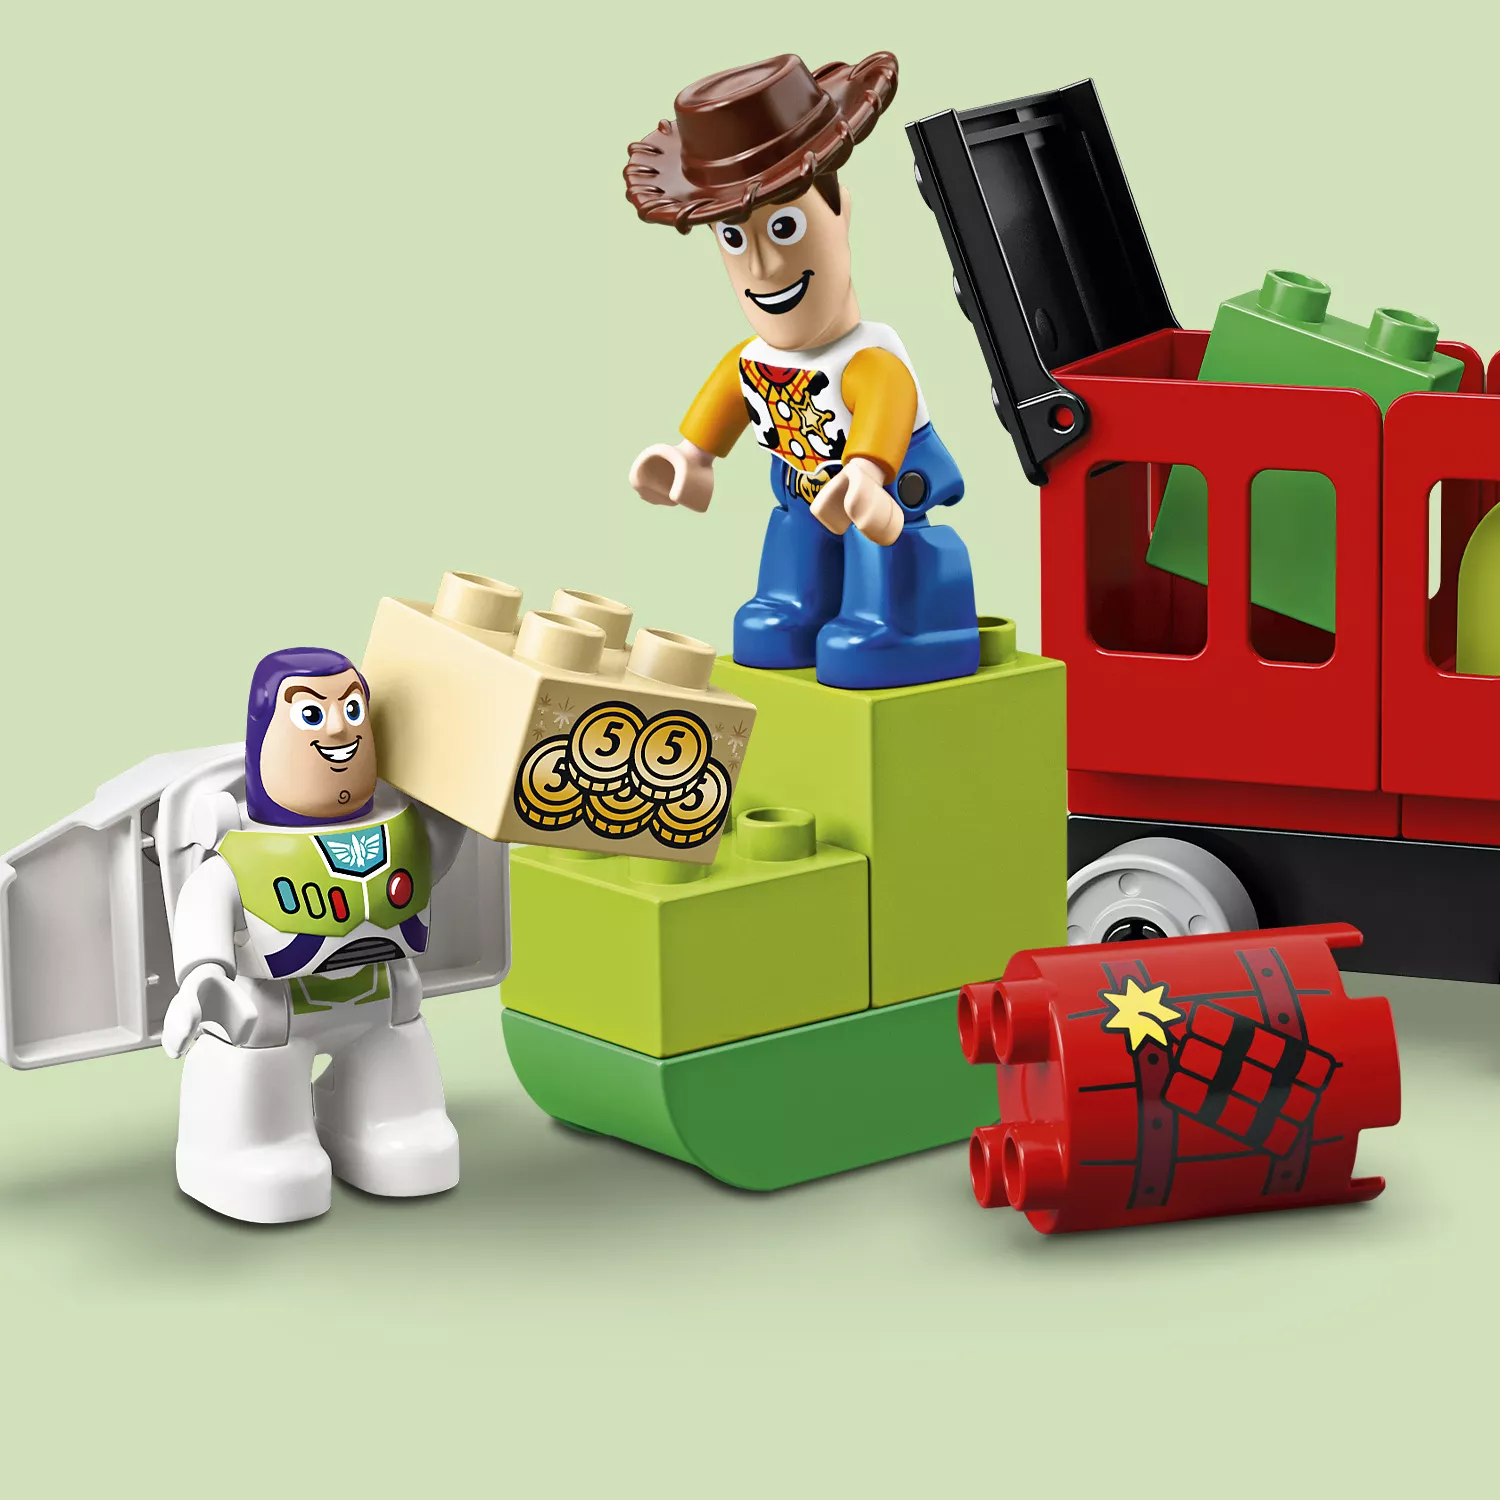 LEGO DUPLO Toy-Story-Zug